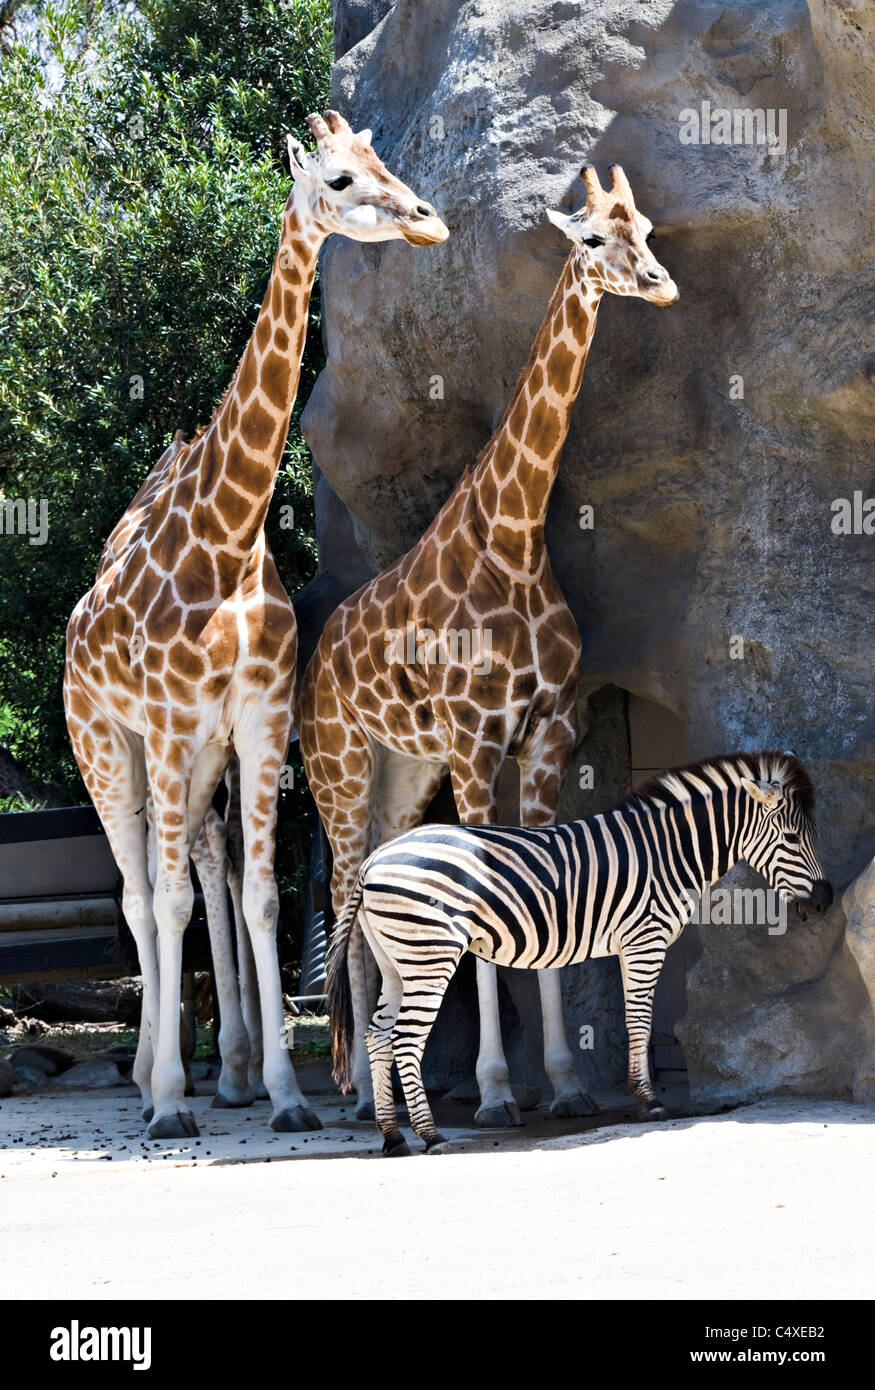 Belle girafes et un zèbre au Zoo de Taronga Sydney New South Wales Australie Banque D'Images